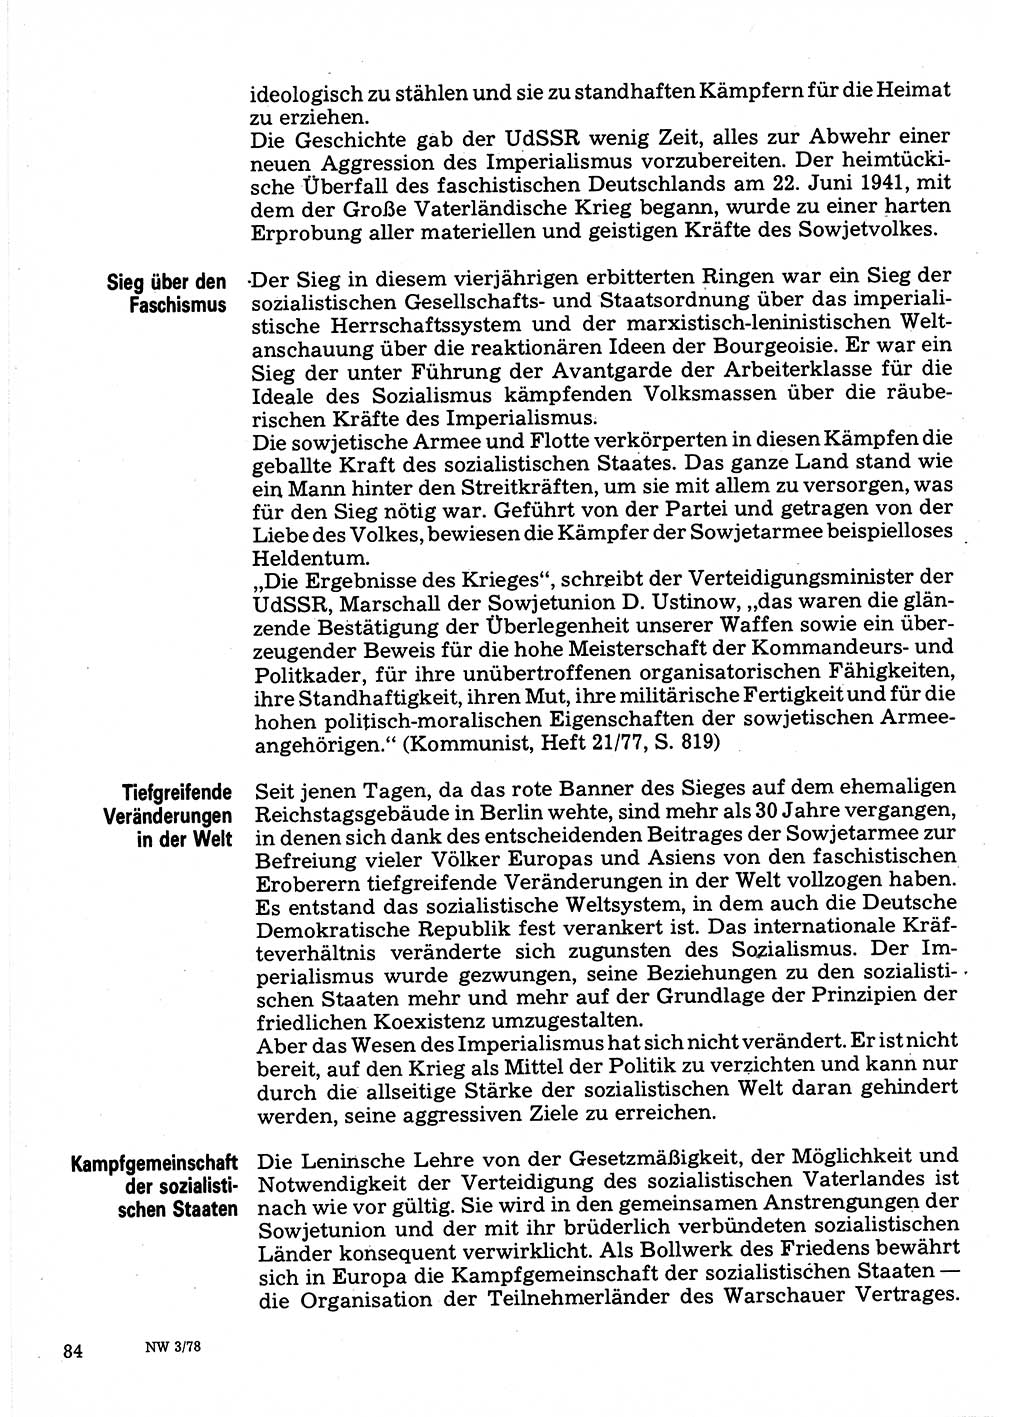 Neuer Weg (NW), Organ des Zentralkomitees (ZK) der SED (Sozialistische Einheitspartei Deutschlands) für Fragen des Parteilebens, 33. Jahrgang [Deutsche Demokratische Republik (DDR)] 1978, Seite 84 (NW ZK SED DDR 1978, S. 84)